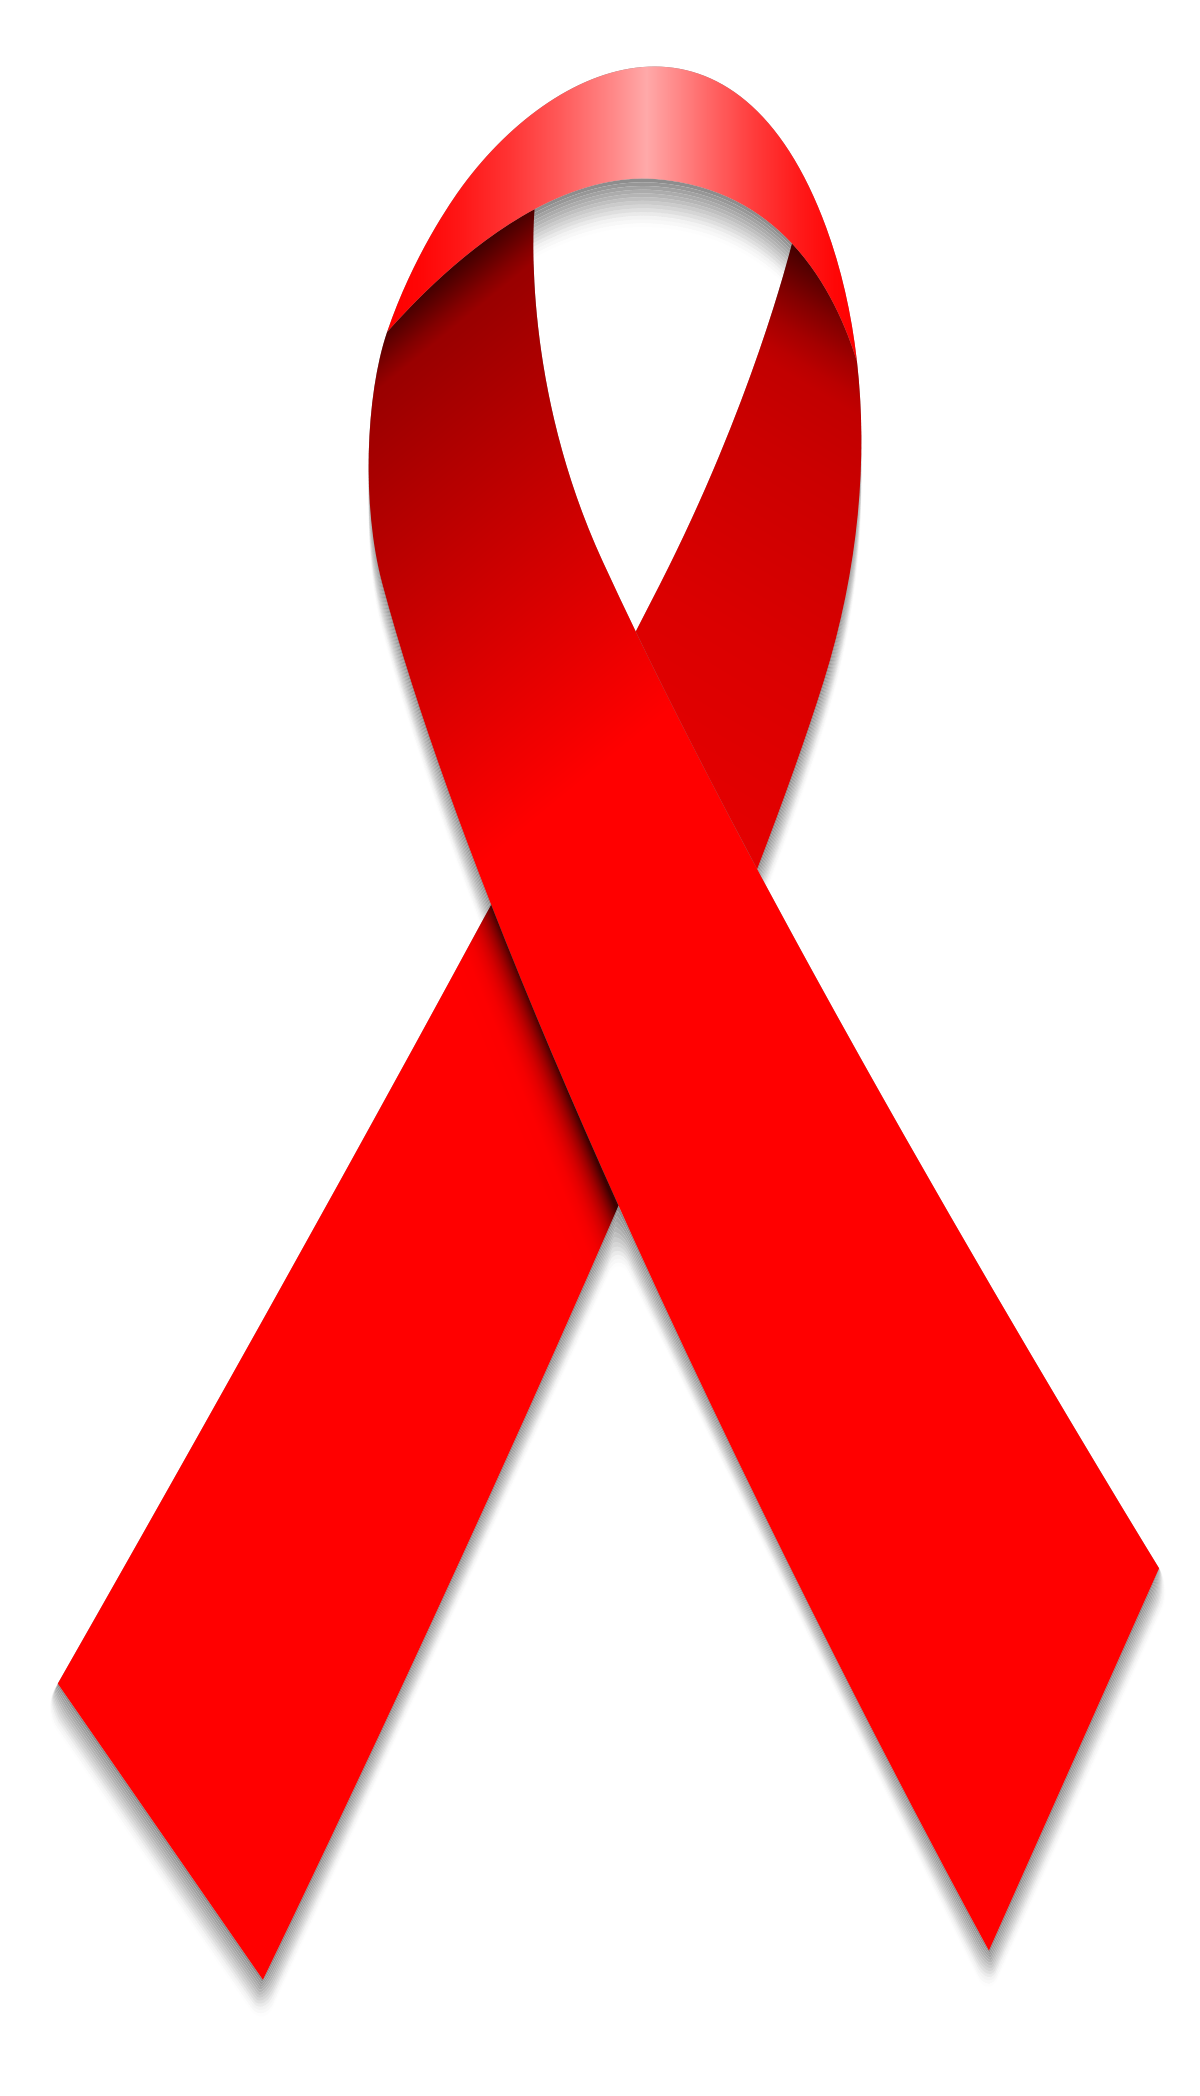 File:World Aids Day Ribbon.svg.